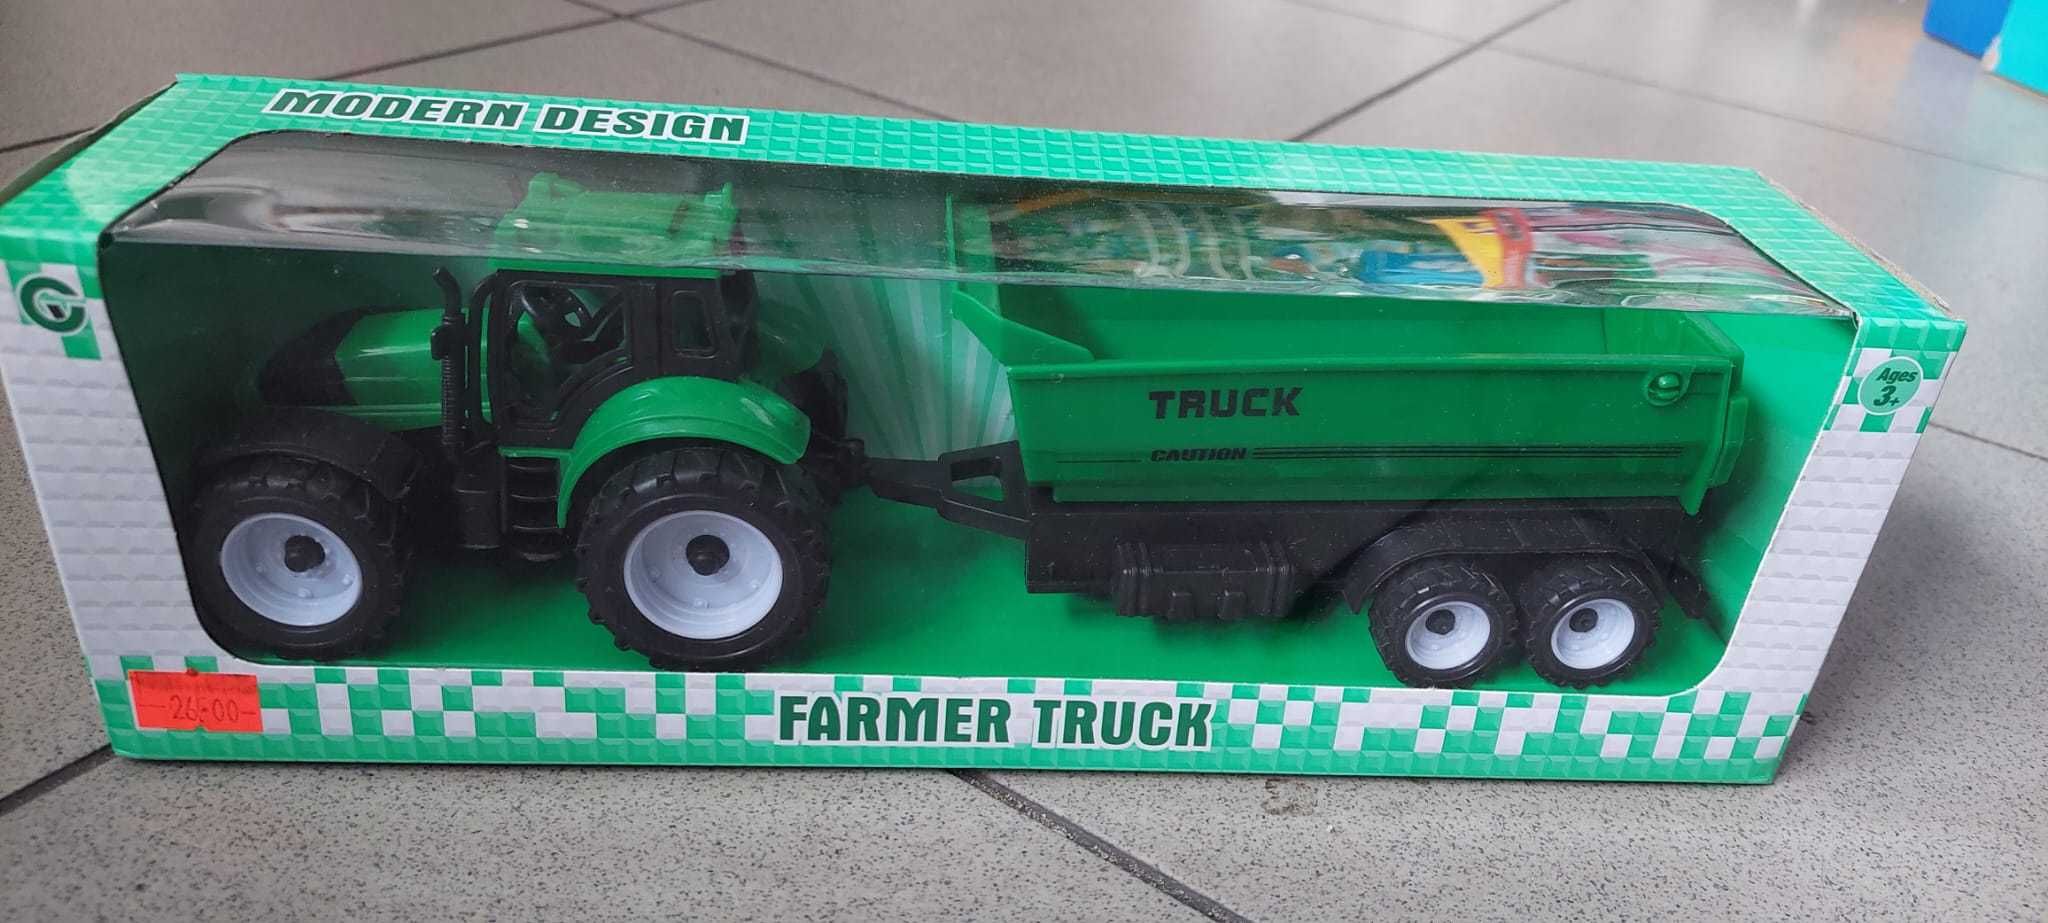 Auto samochód traktor ciągnik naczepa pojazd z napędem Farmer truck